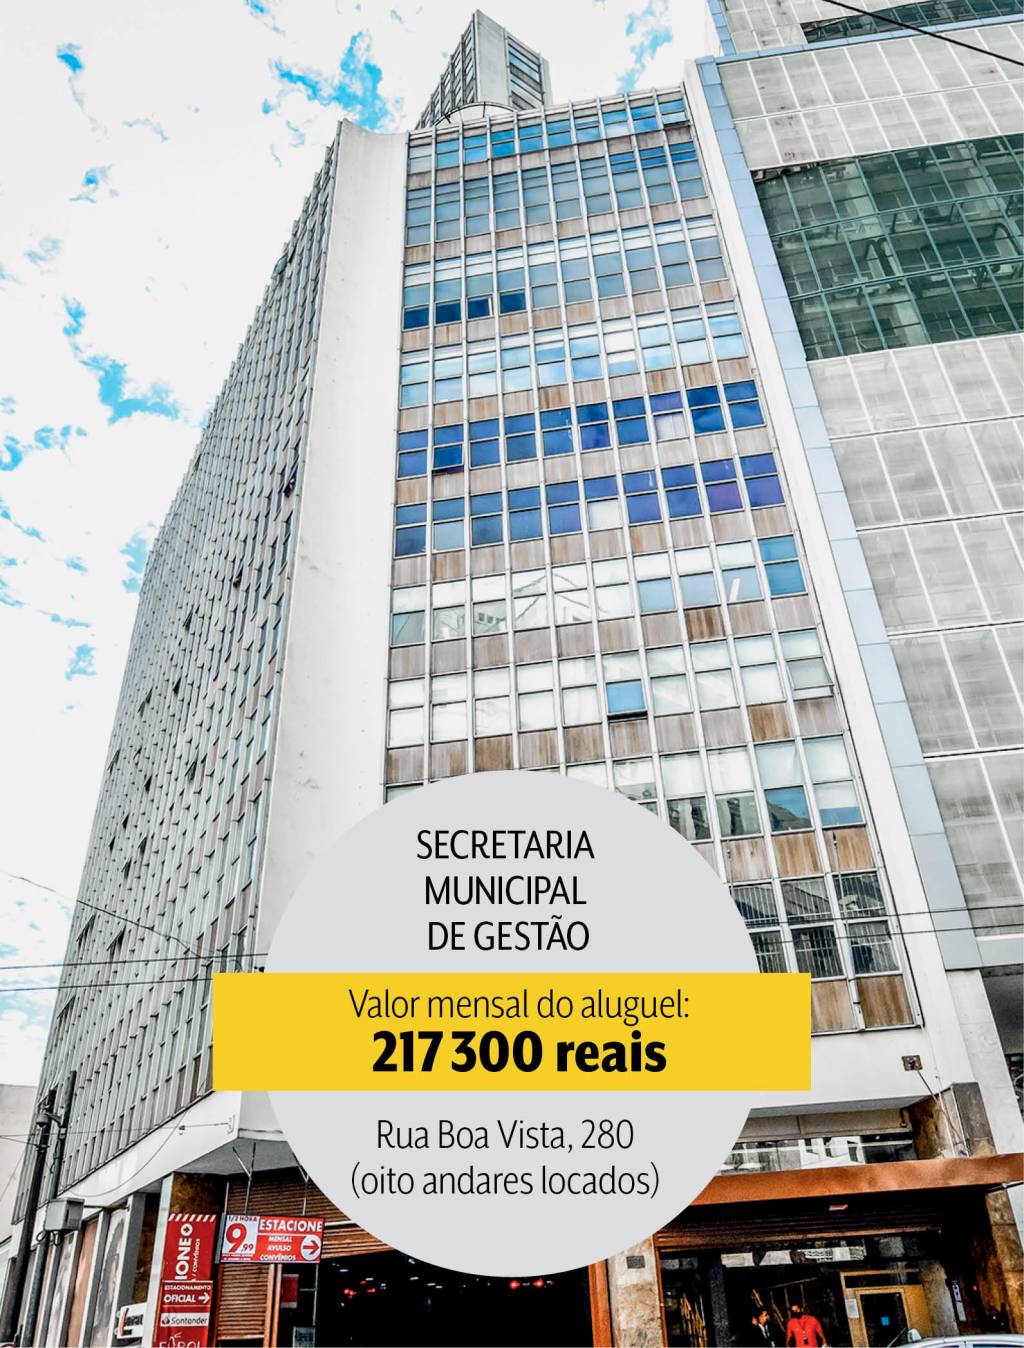 Secretaria Municipal de Gestão: oito andares alocados por mais de 200 mil reais